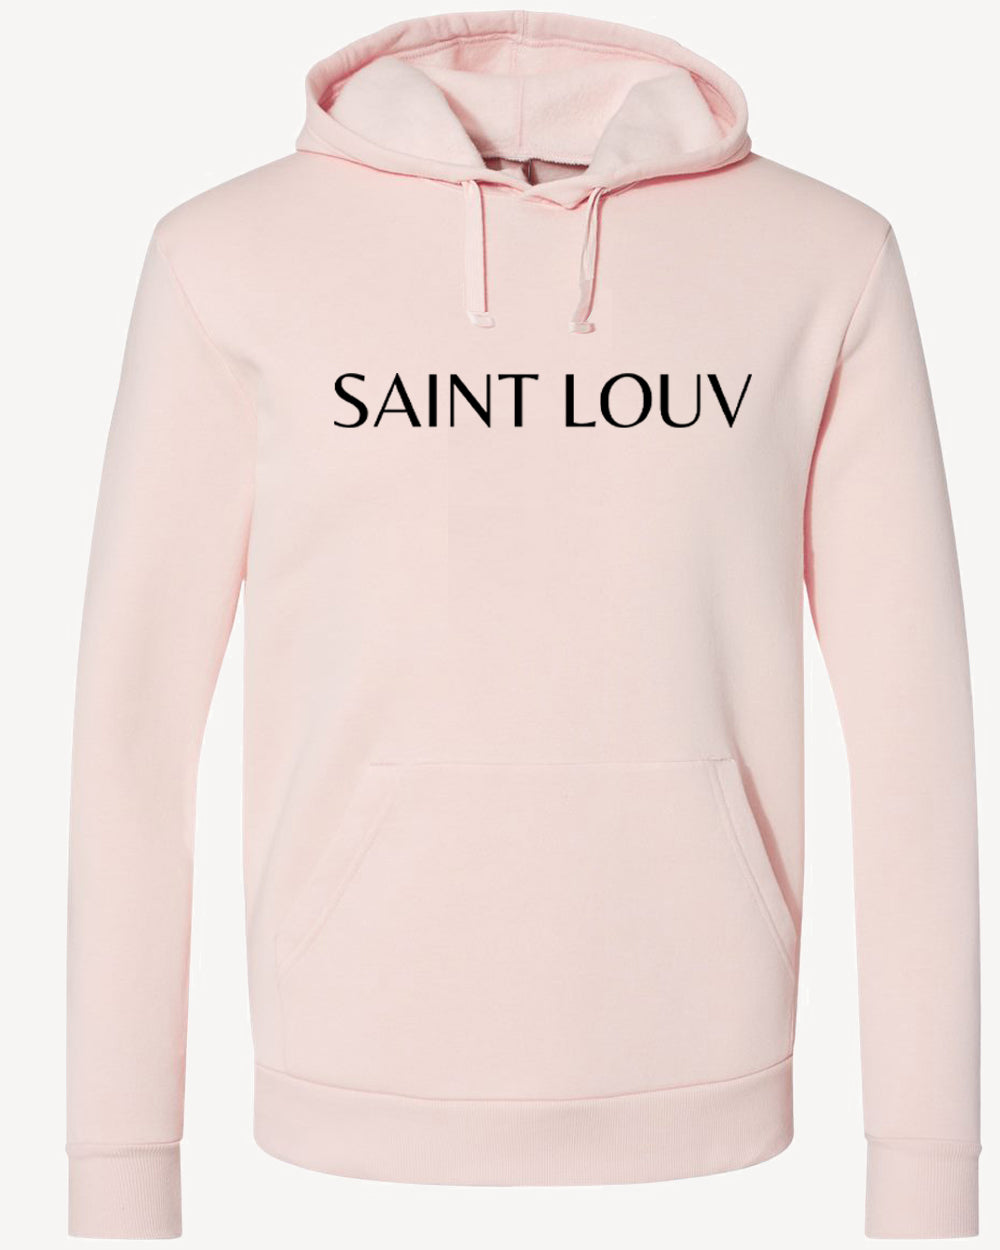 Saint Louv Pink Hoodie L